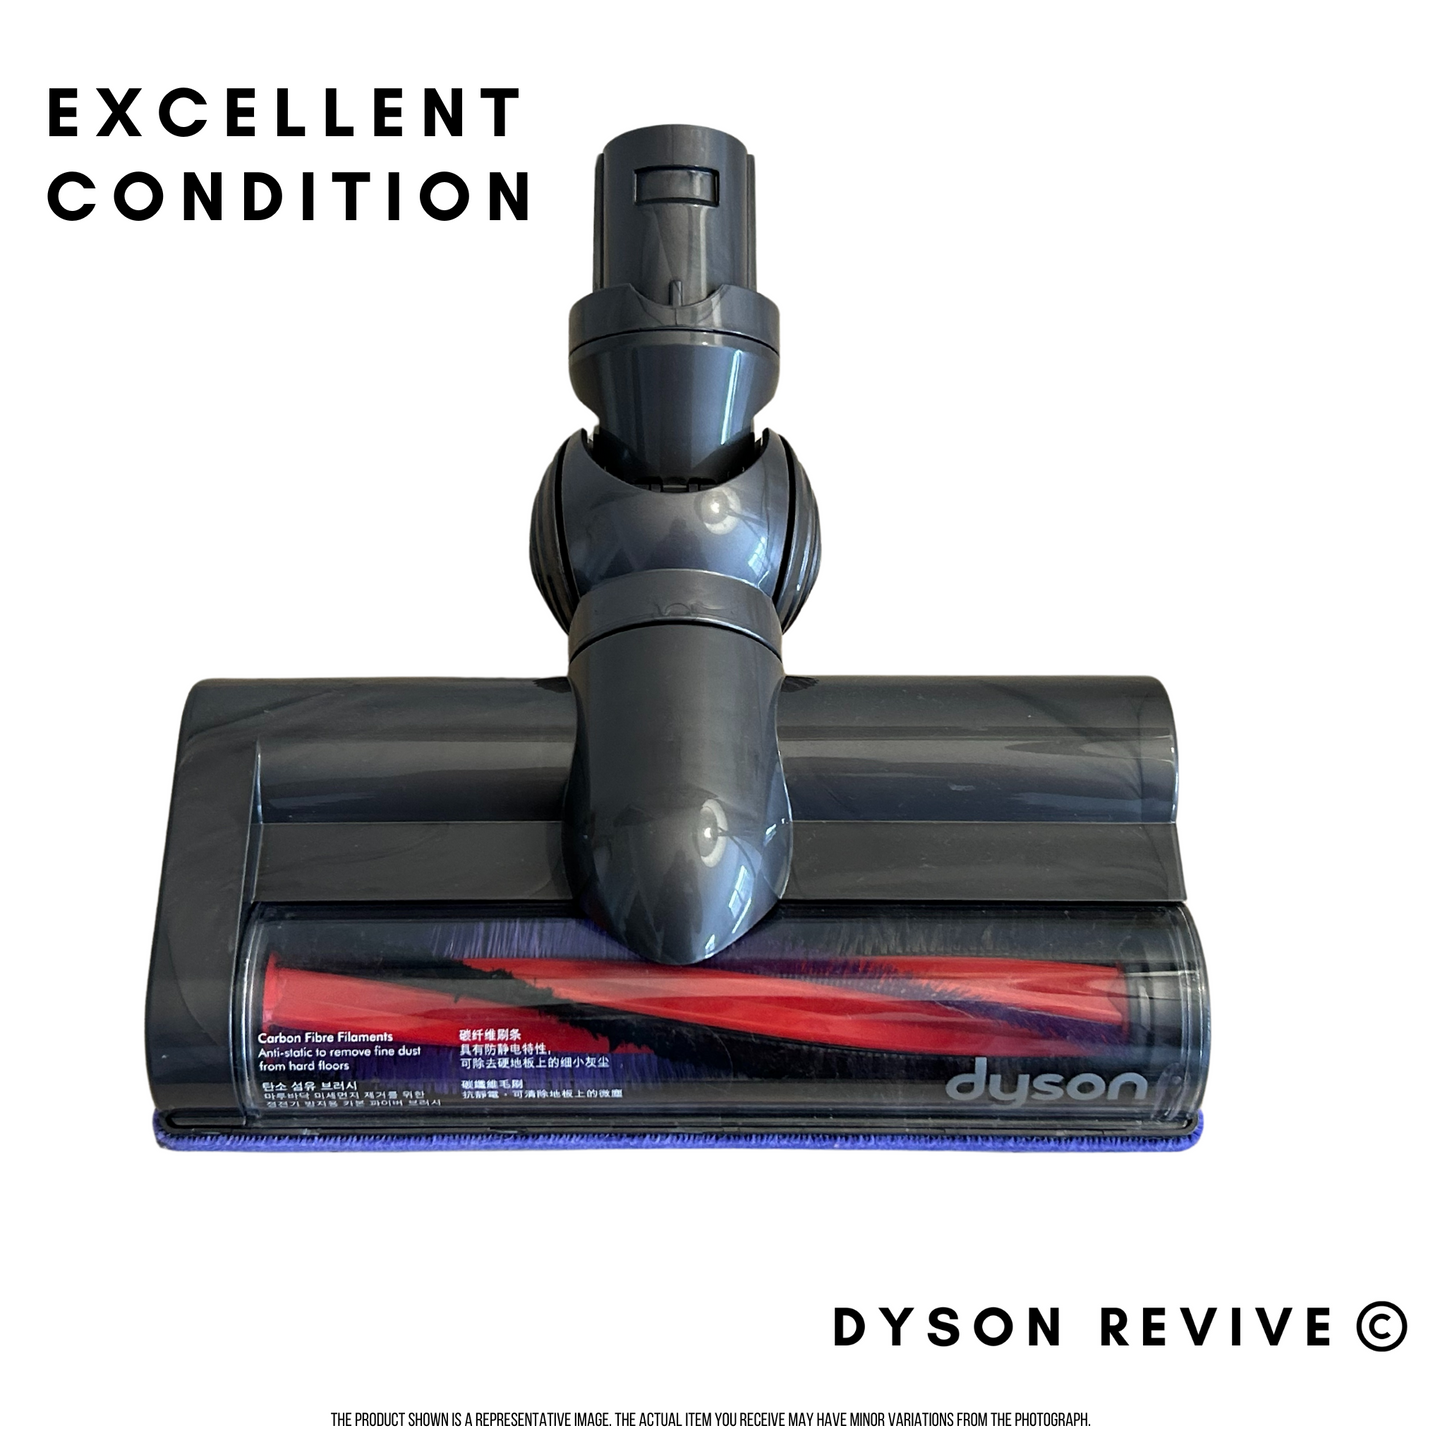 Genuine Dyson Refurbished Carbon Powerhead Motorhead For Dyson V6 Slim and Slim Origin Dyson Vacuums